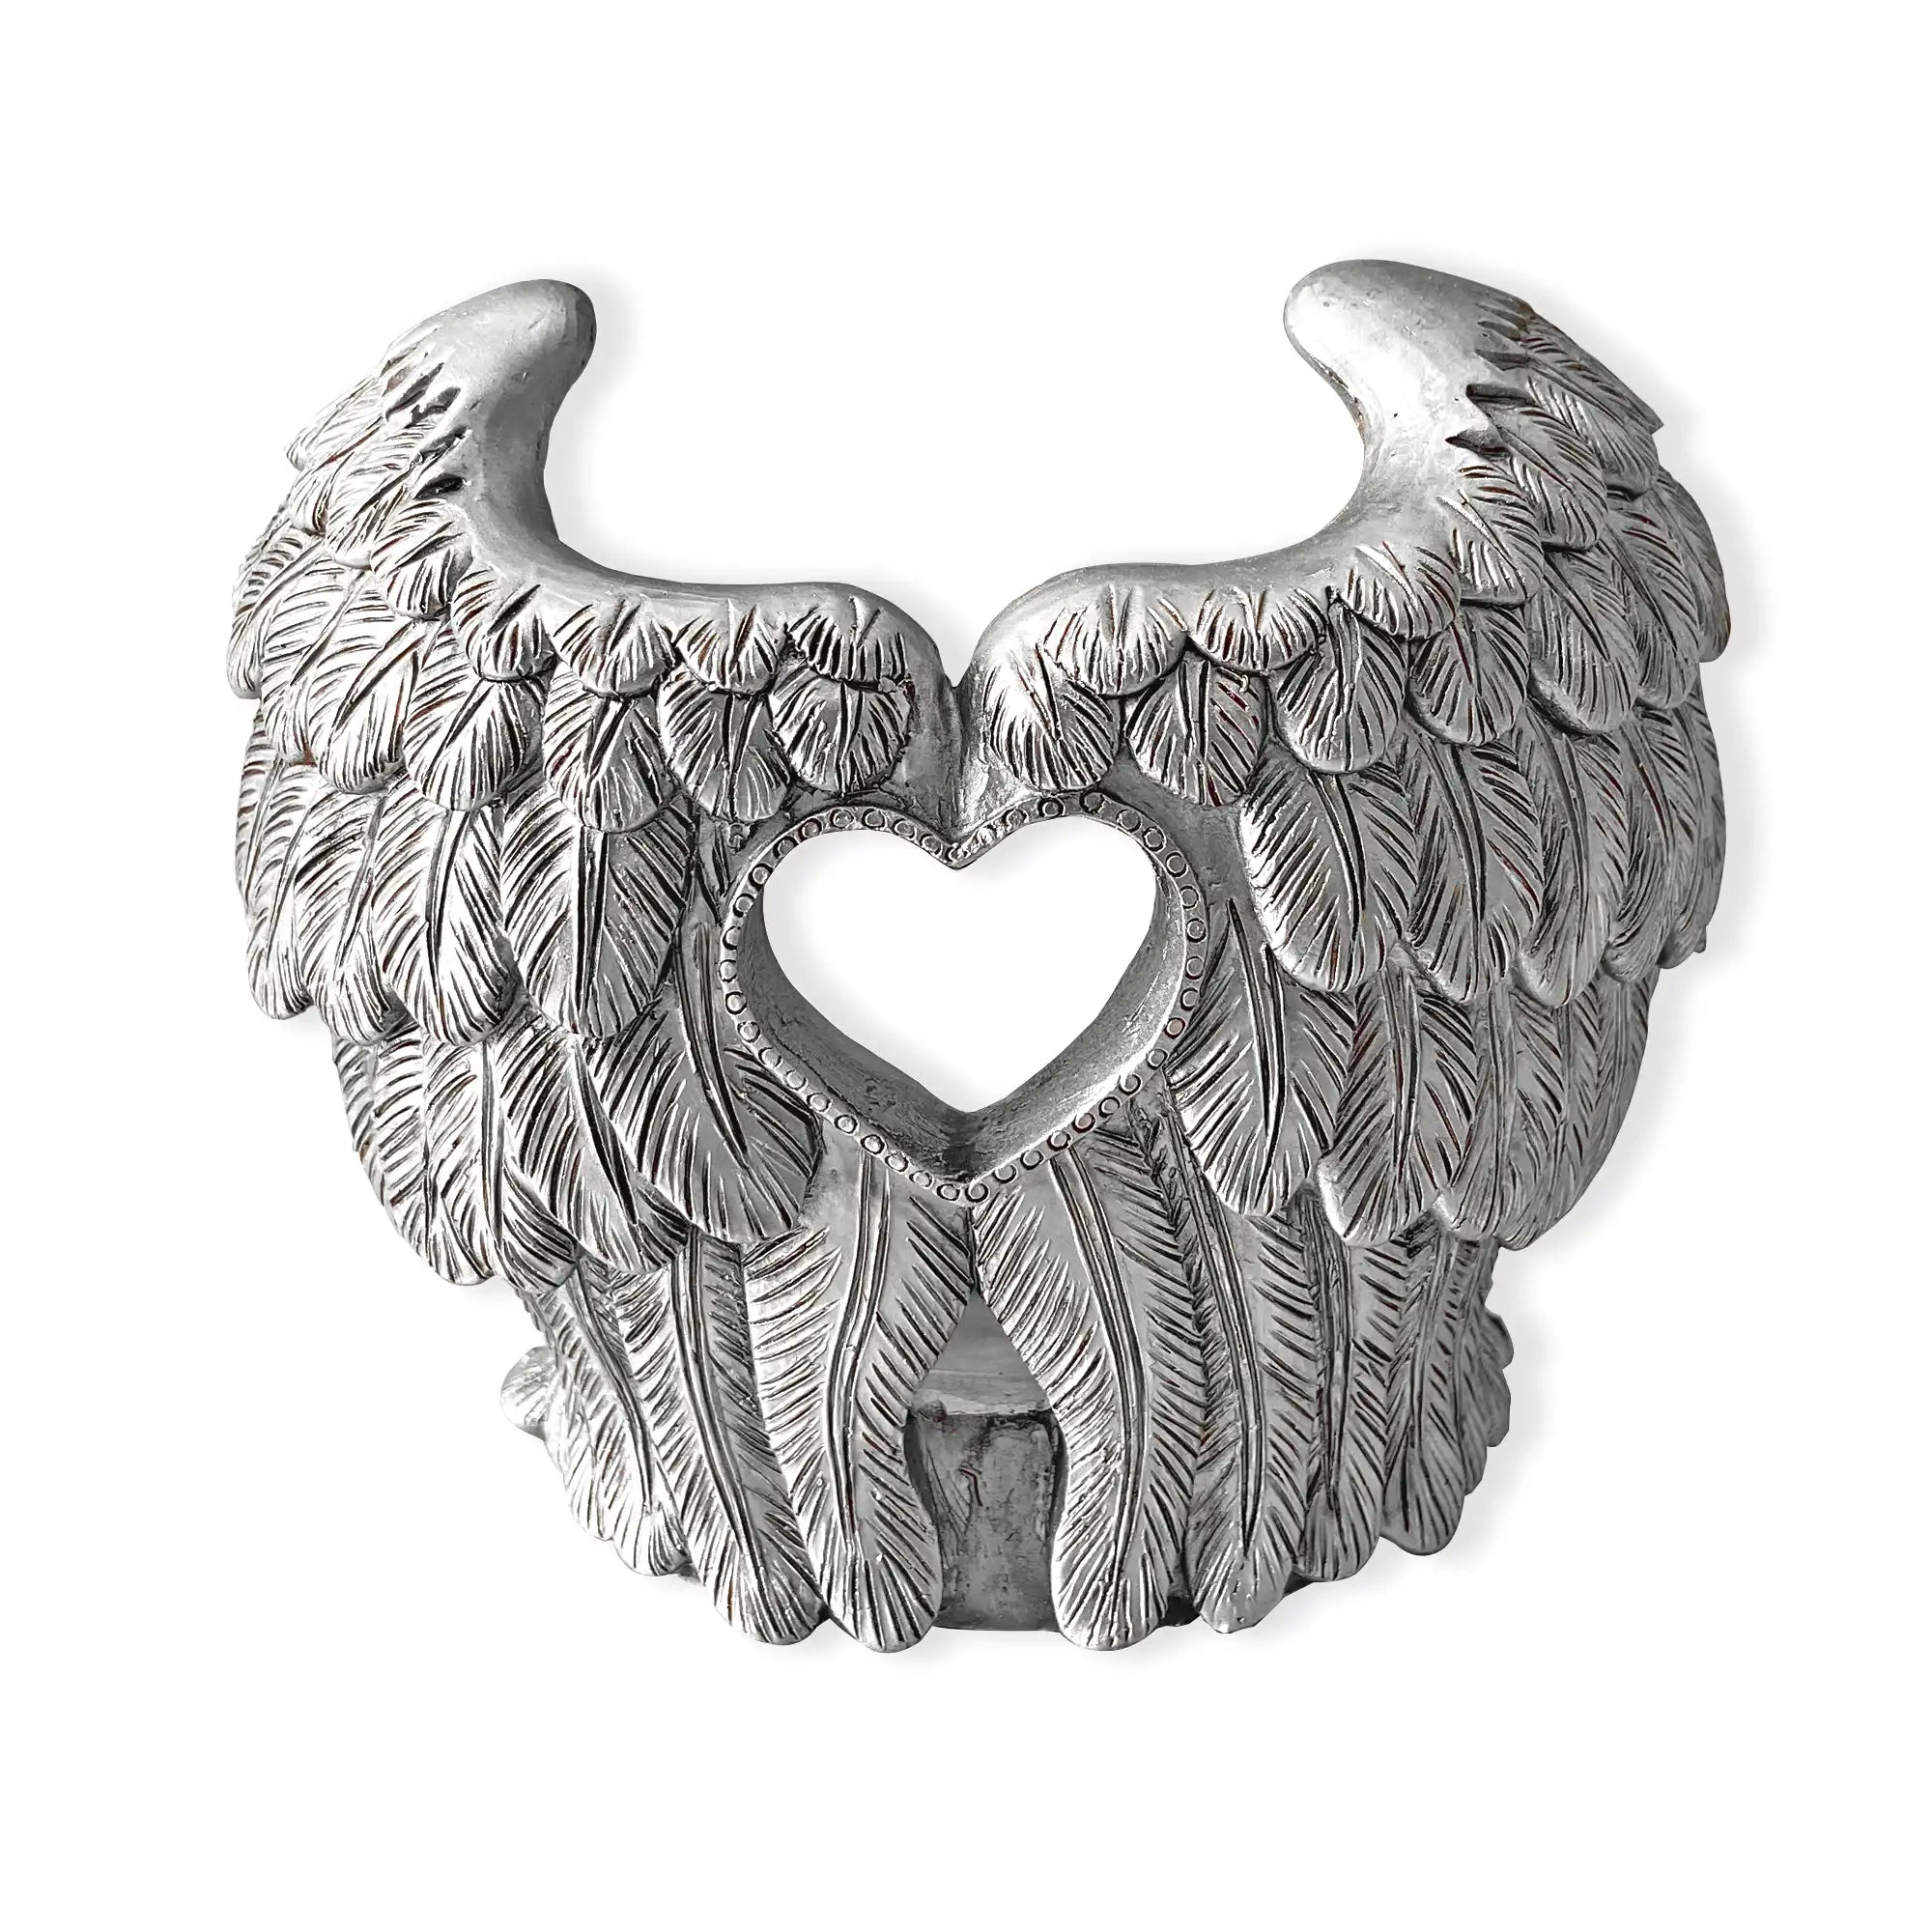 Resin Angel Candle Holder decoration Gift Angel Wings Design desk decoration bust folk crafts